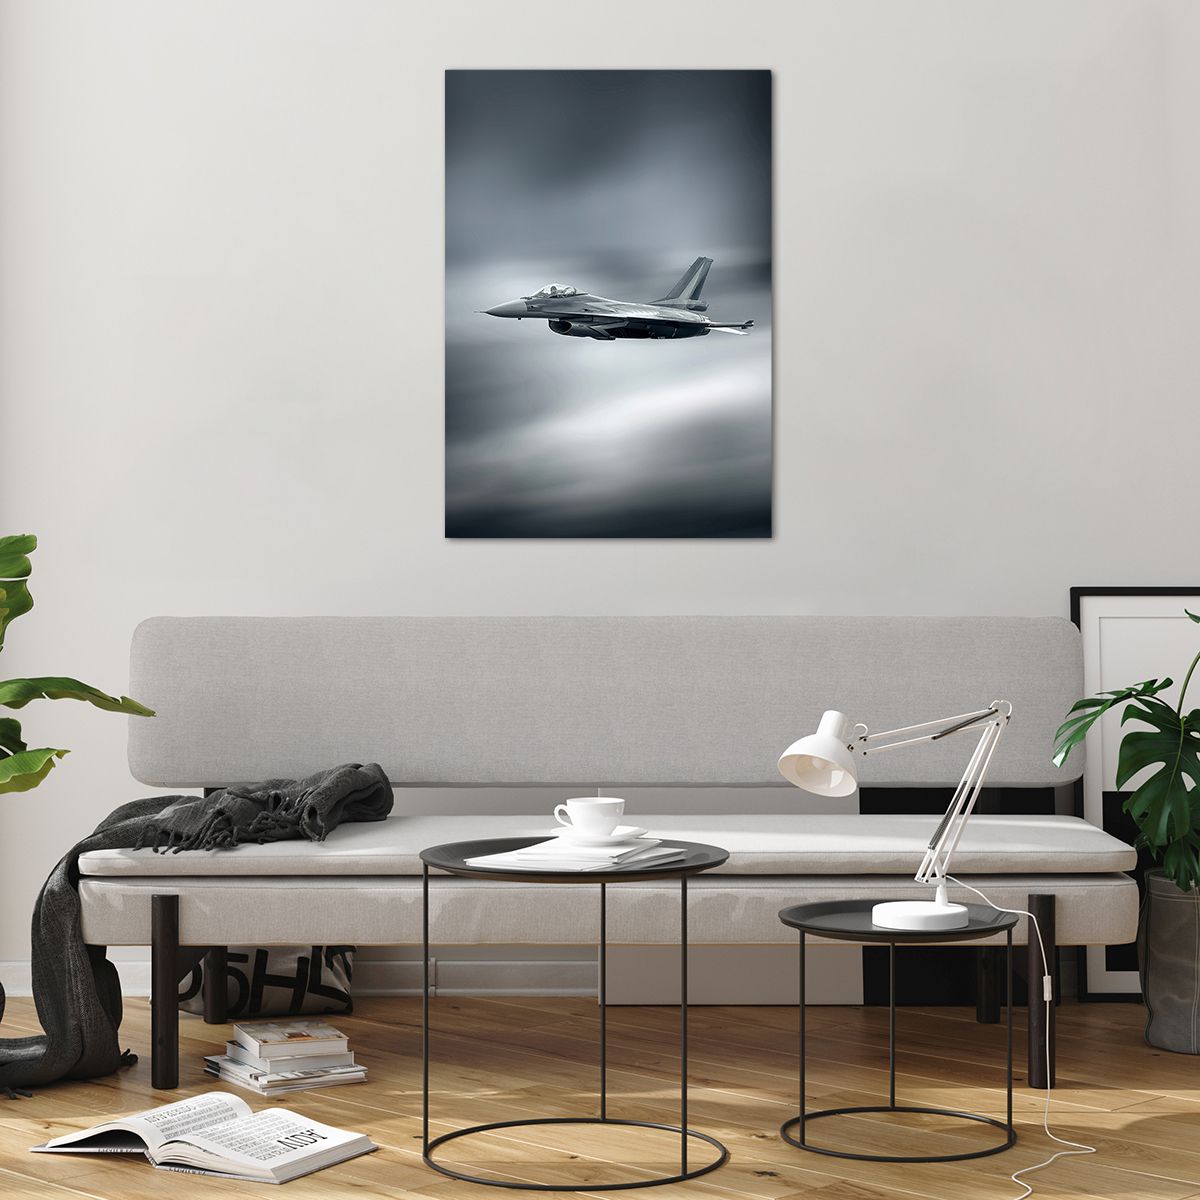 Billede på glas Jagerfly, Billede på glas Militært fly, Billede på glas Jet, Billede på glas Fly, Billede på glas hær